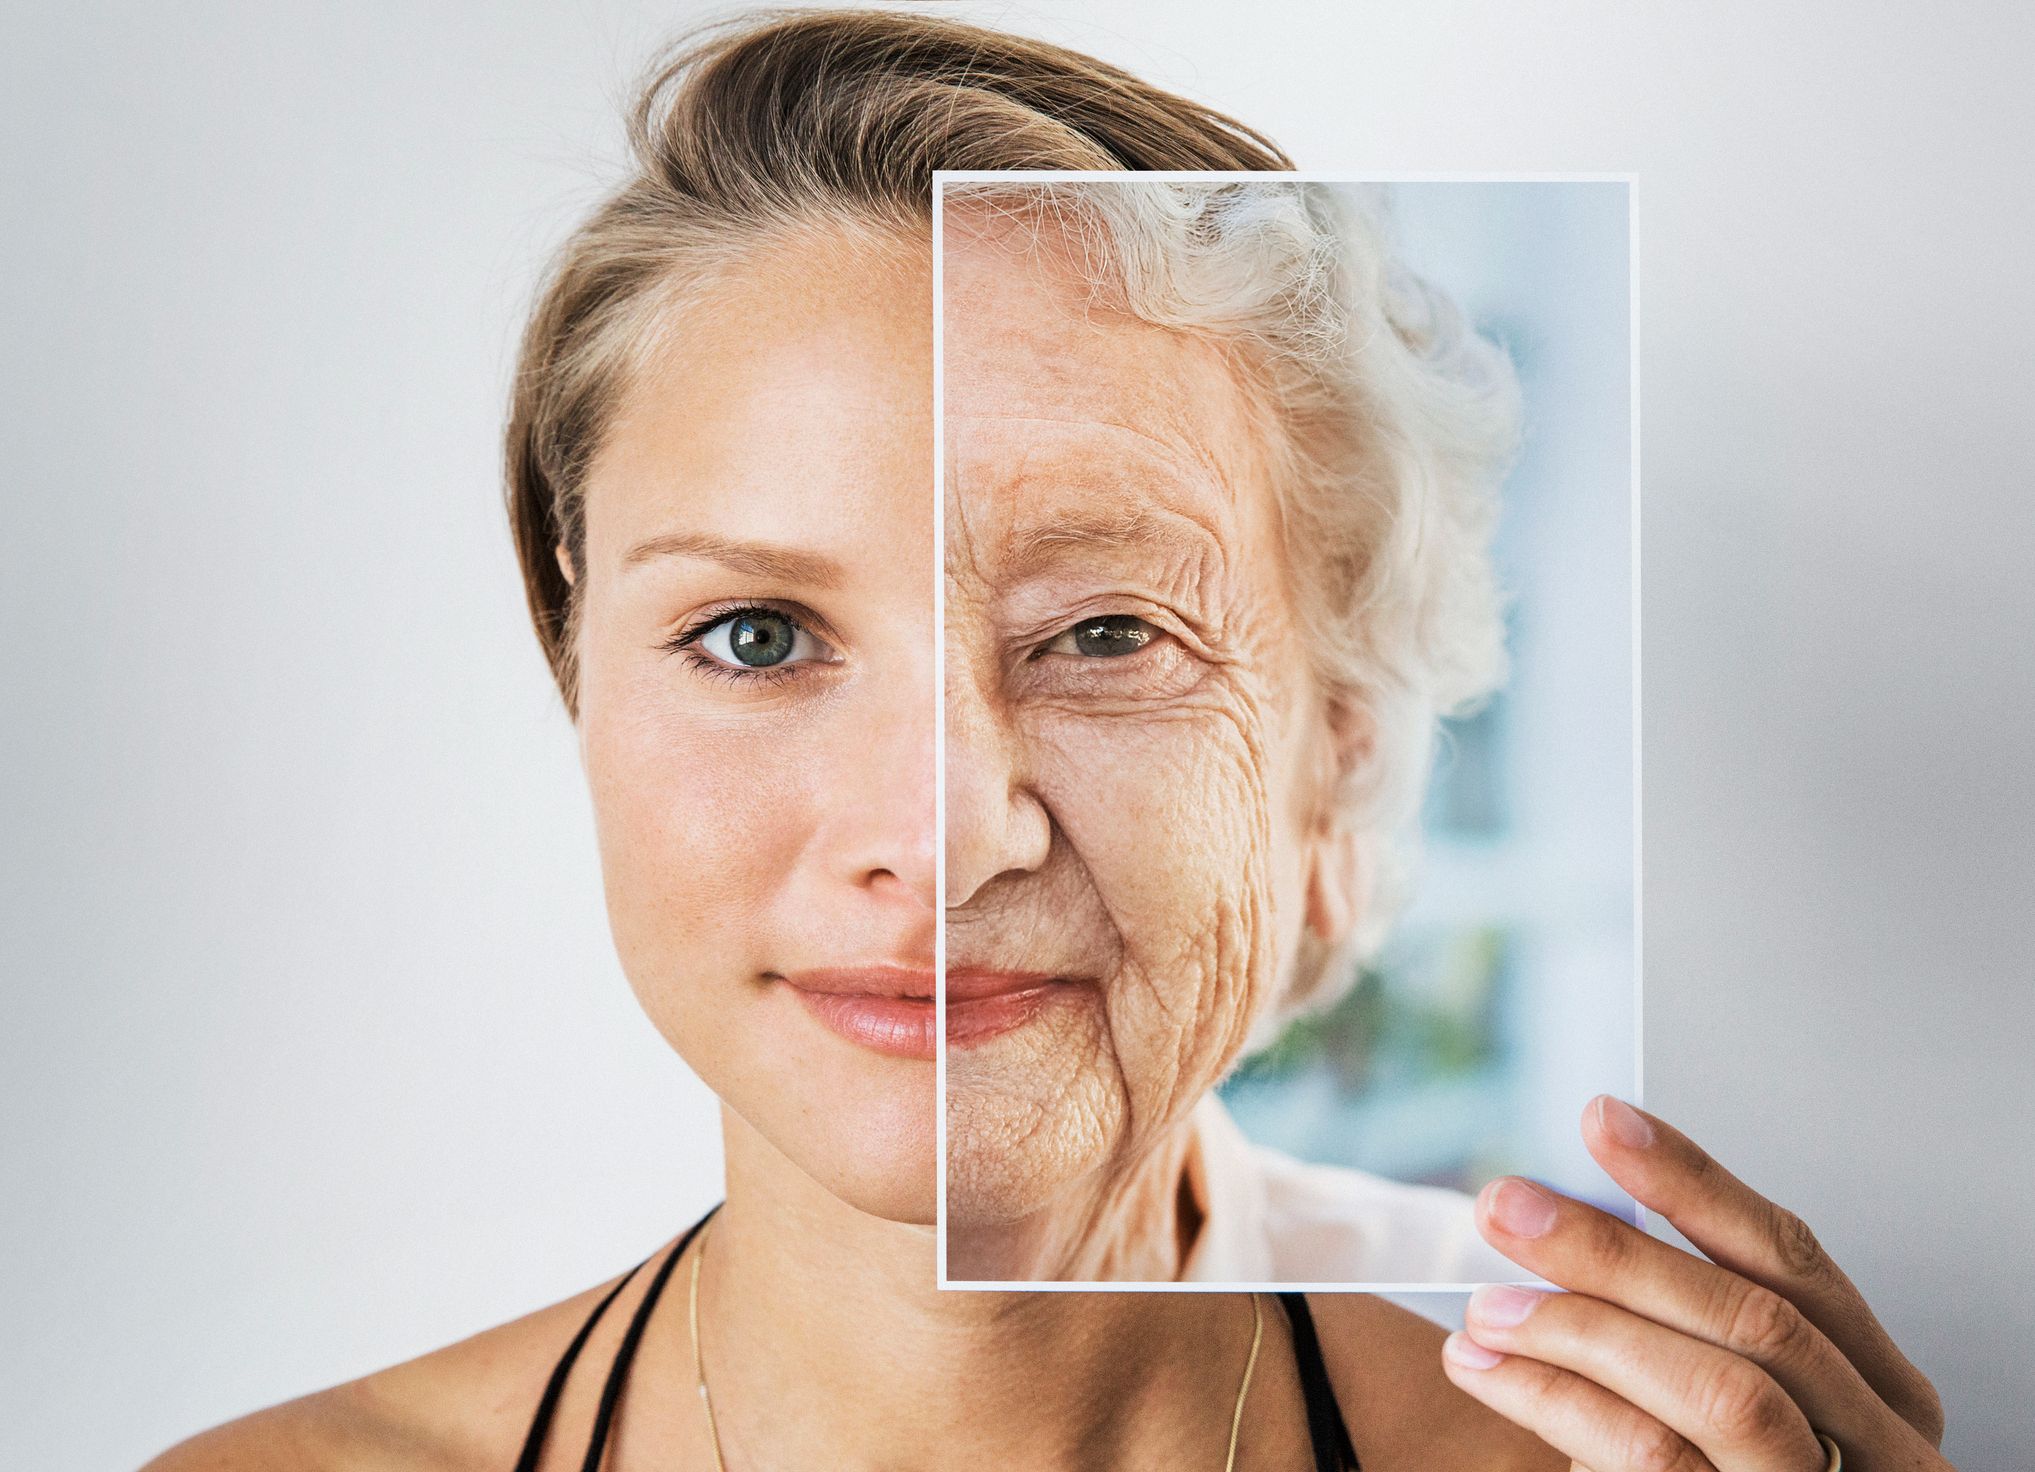 Entenda as principais causas e como evitar o envelhecimento precoce